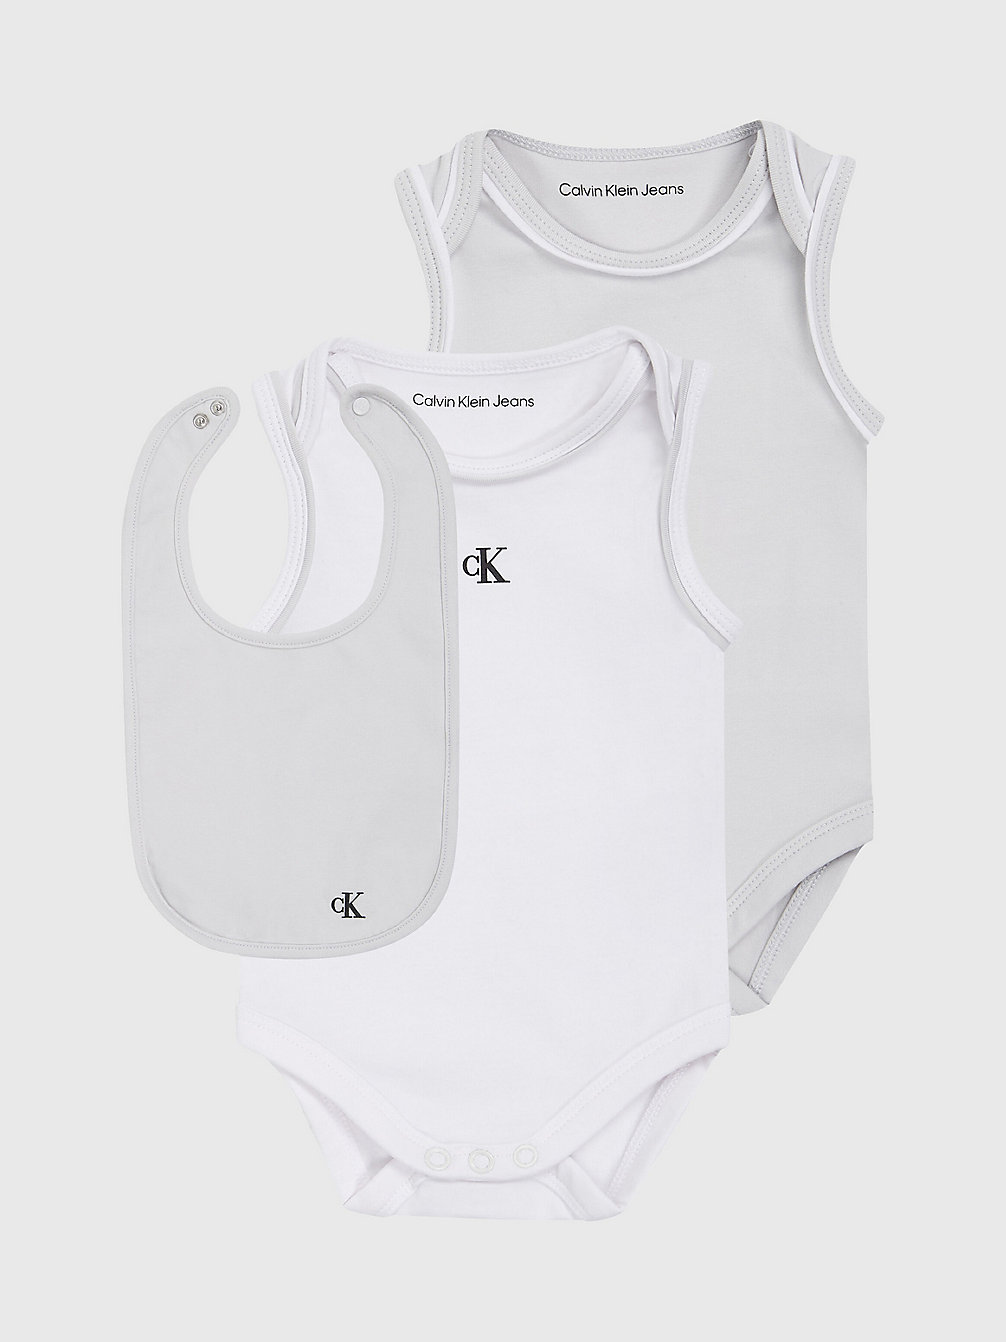 GHOST GREY / BRIGHT WHITE Newborn Bodysuit And Bib Giftset undefined newborn Calvin Klein